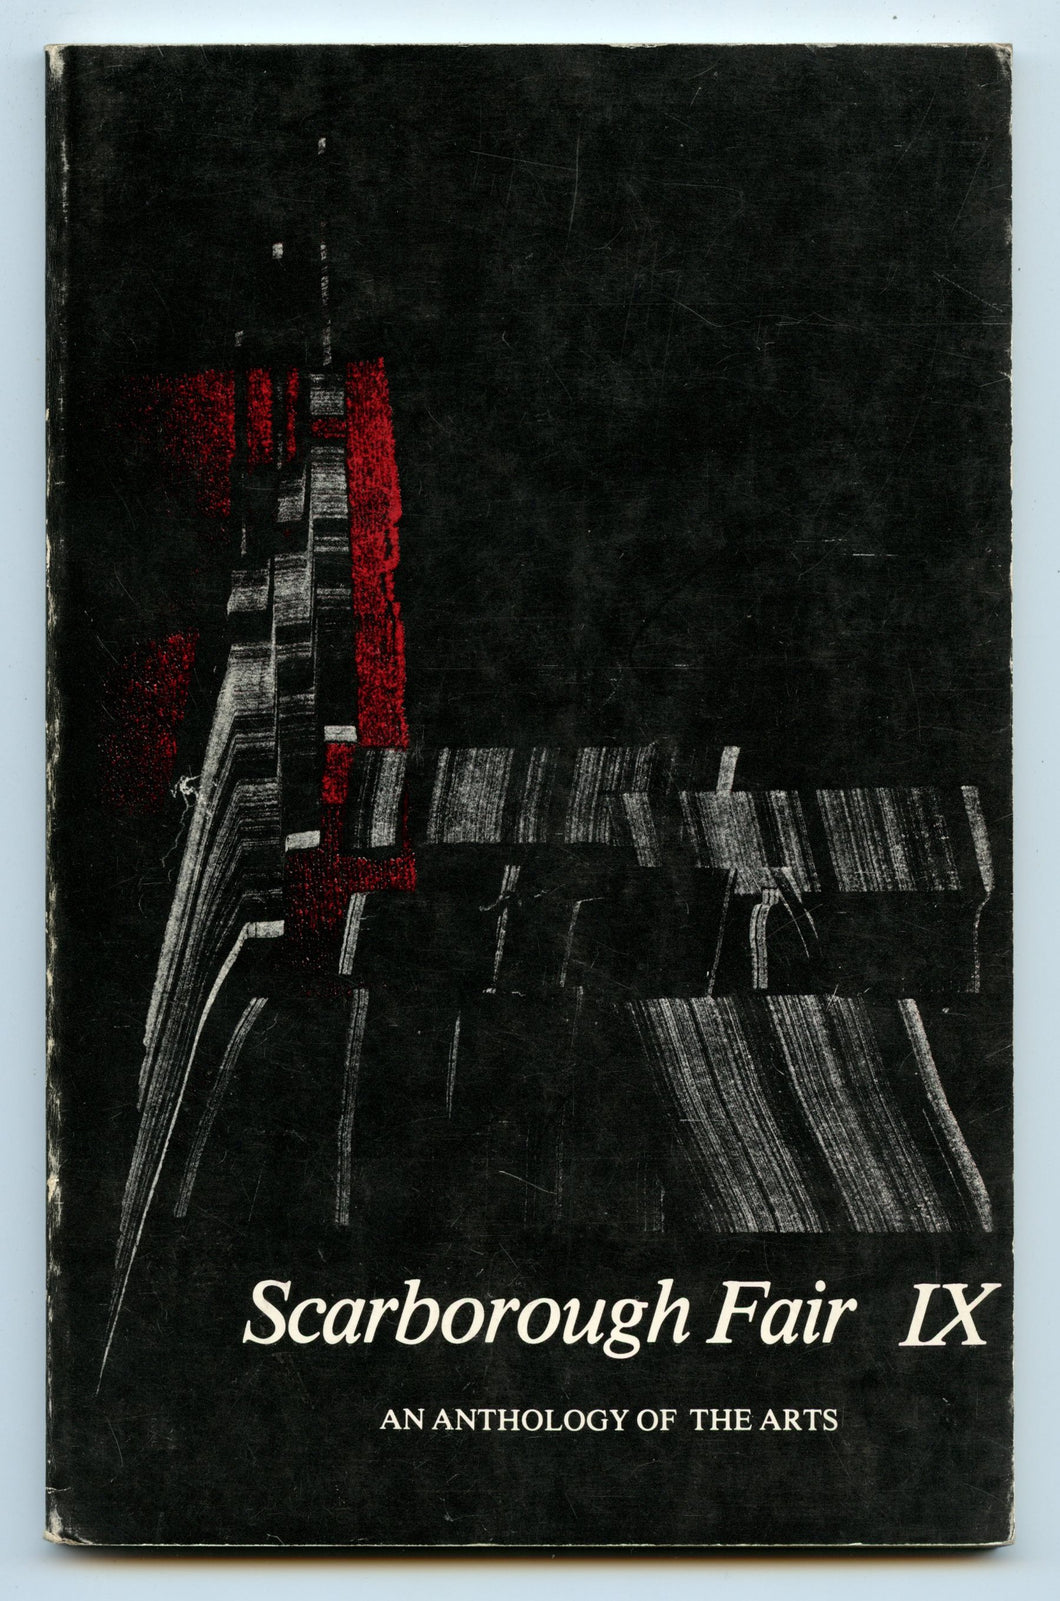 Scarborough Fair IX